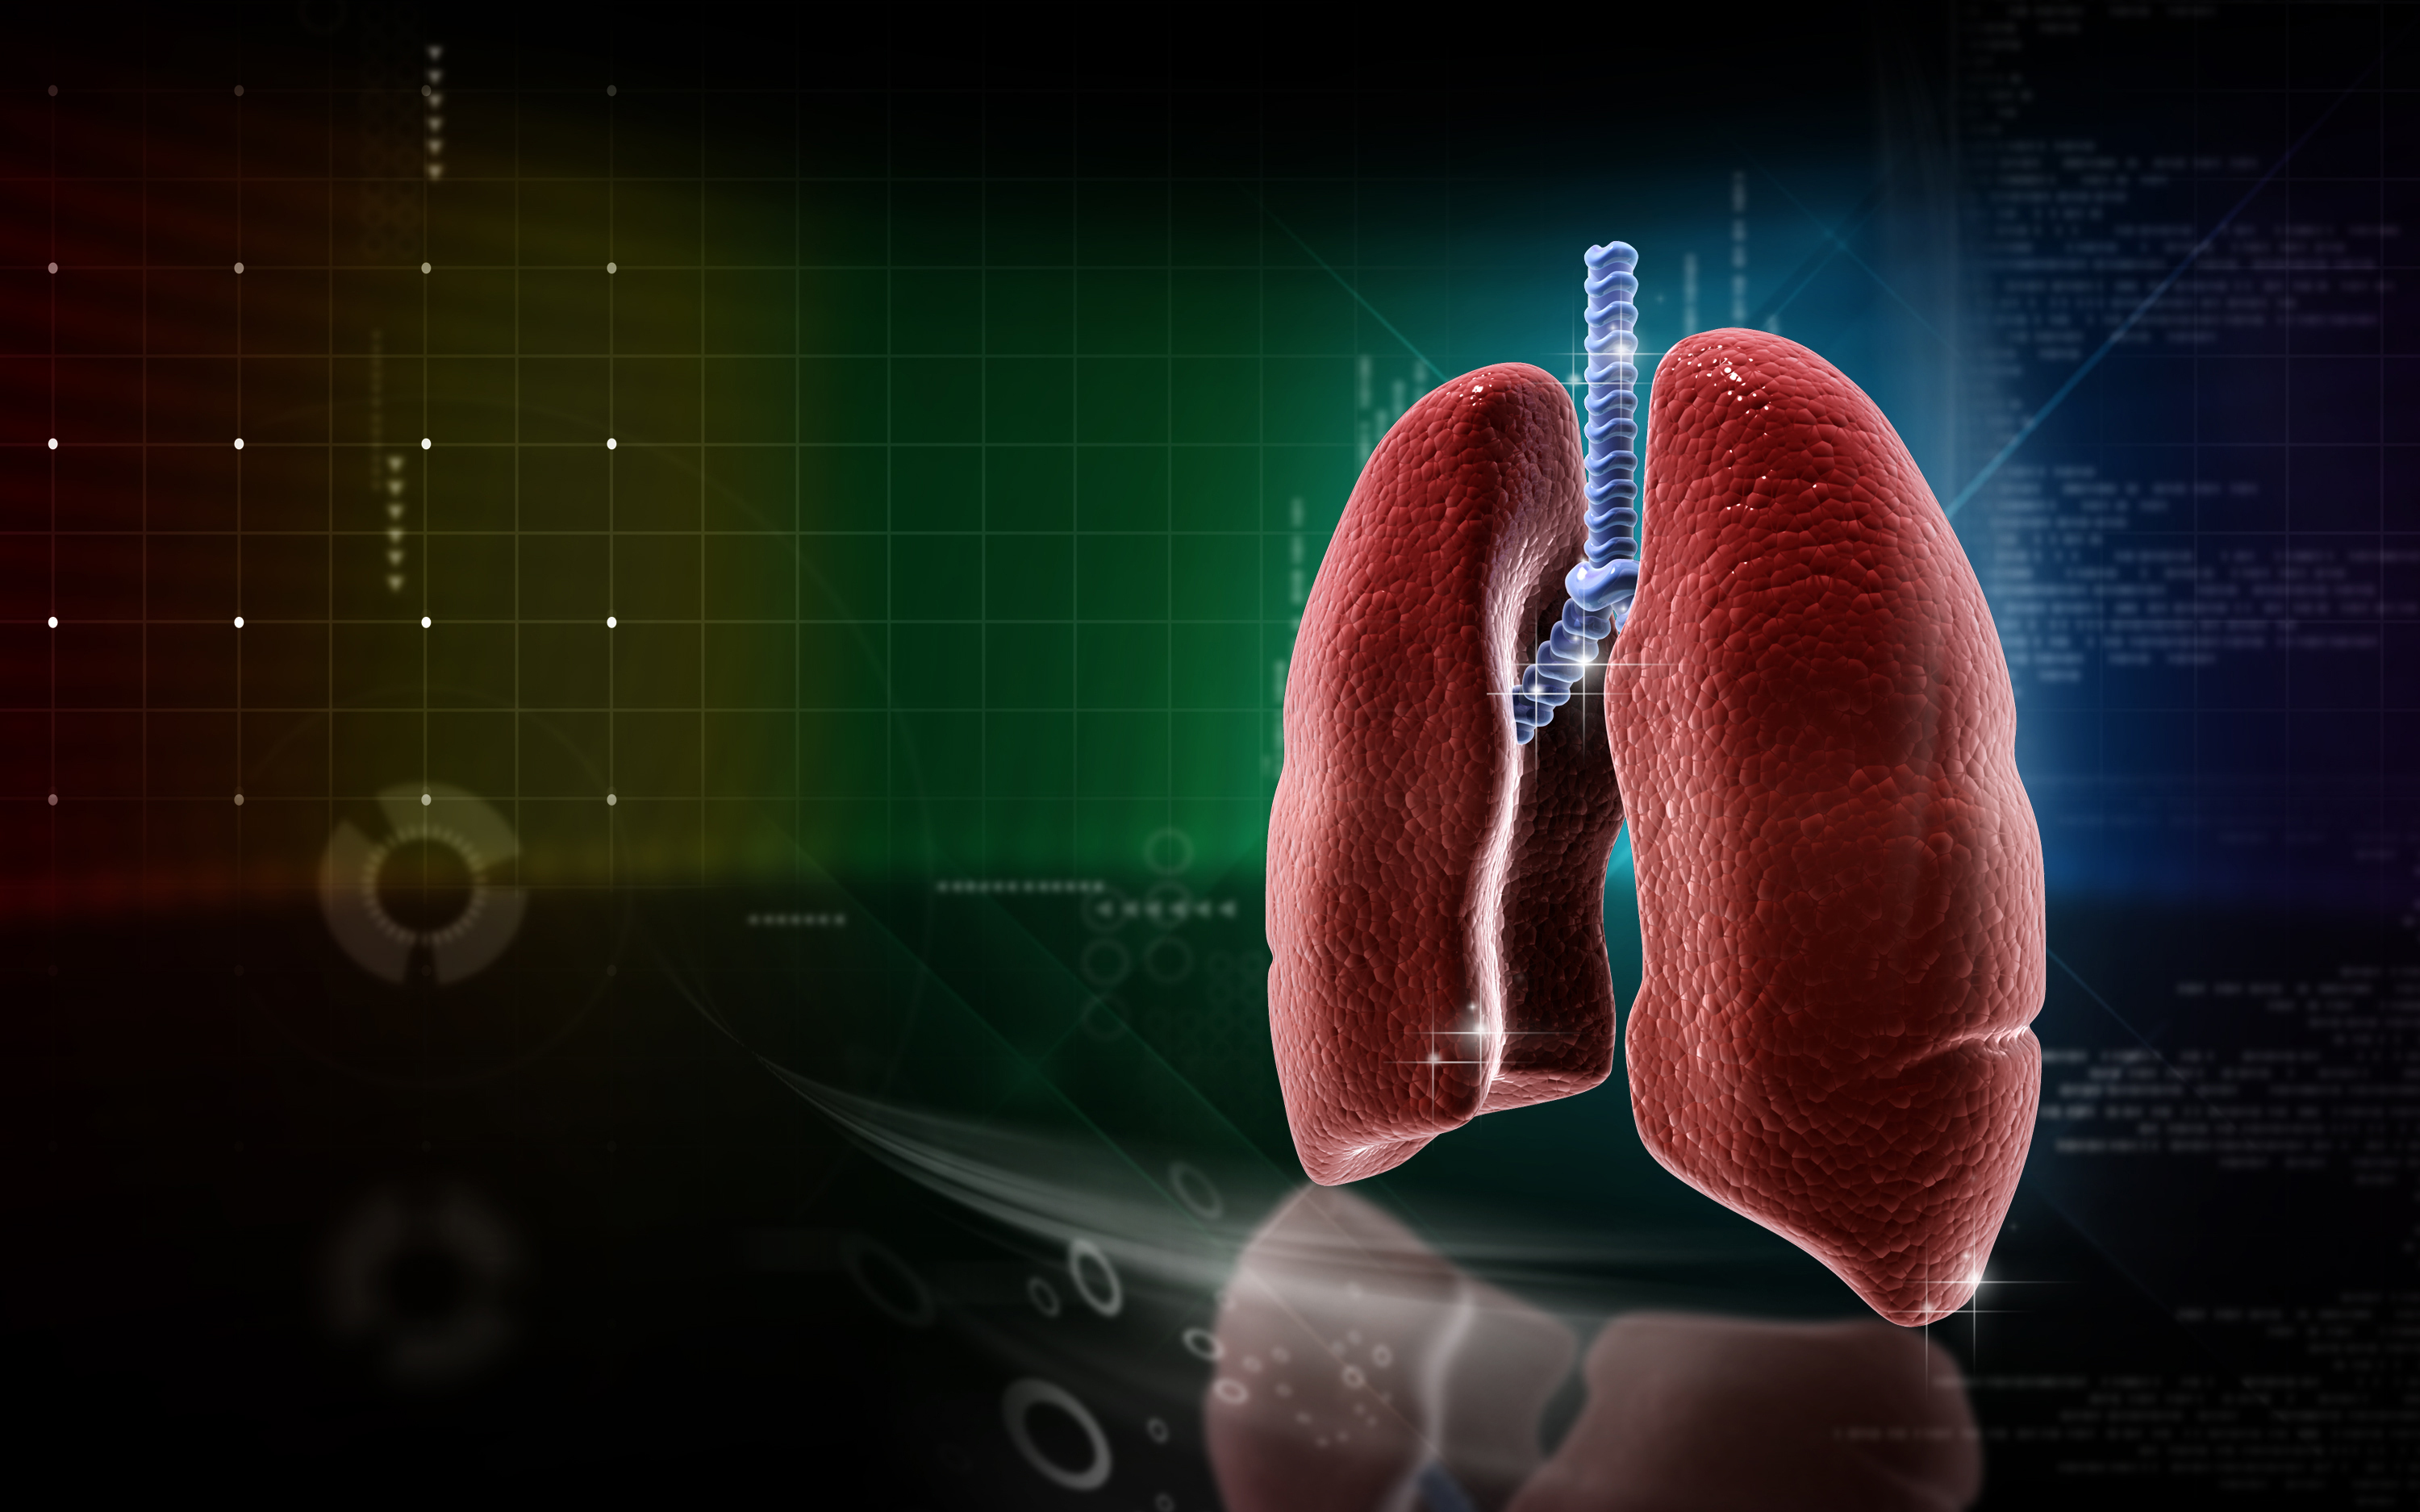 pulmonary fibrosis